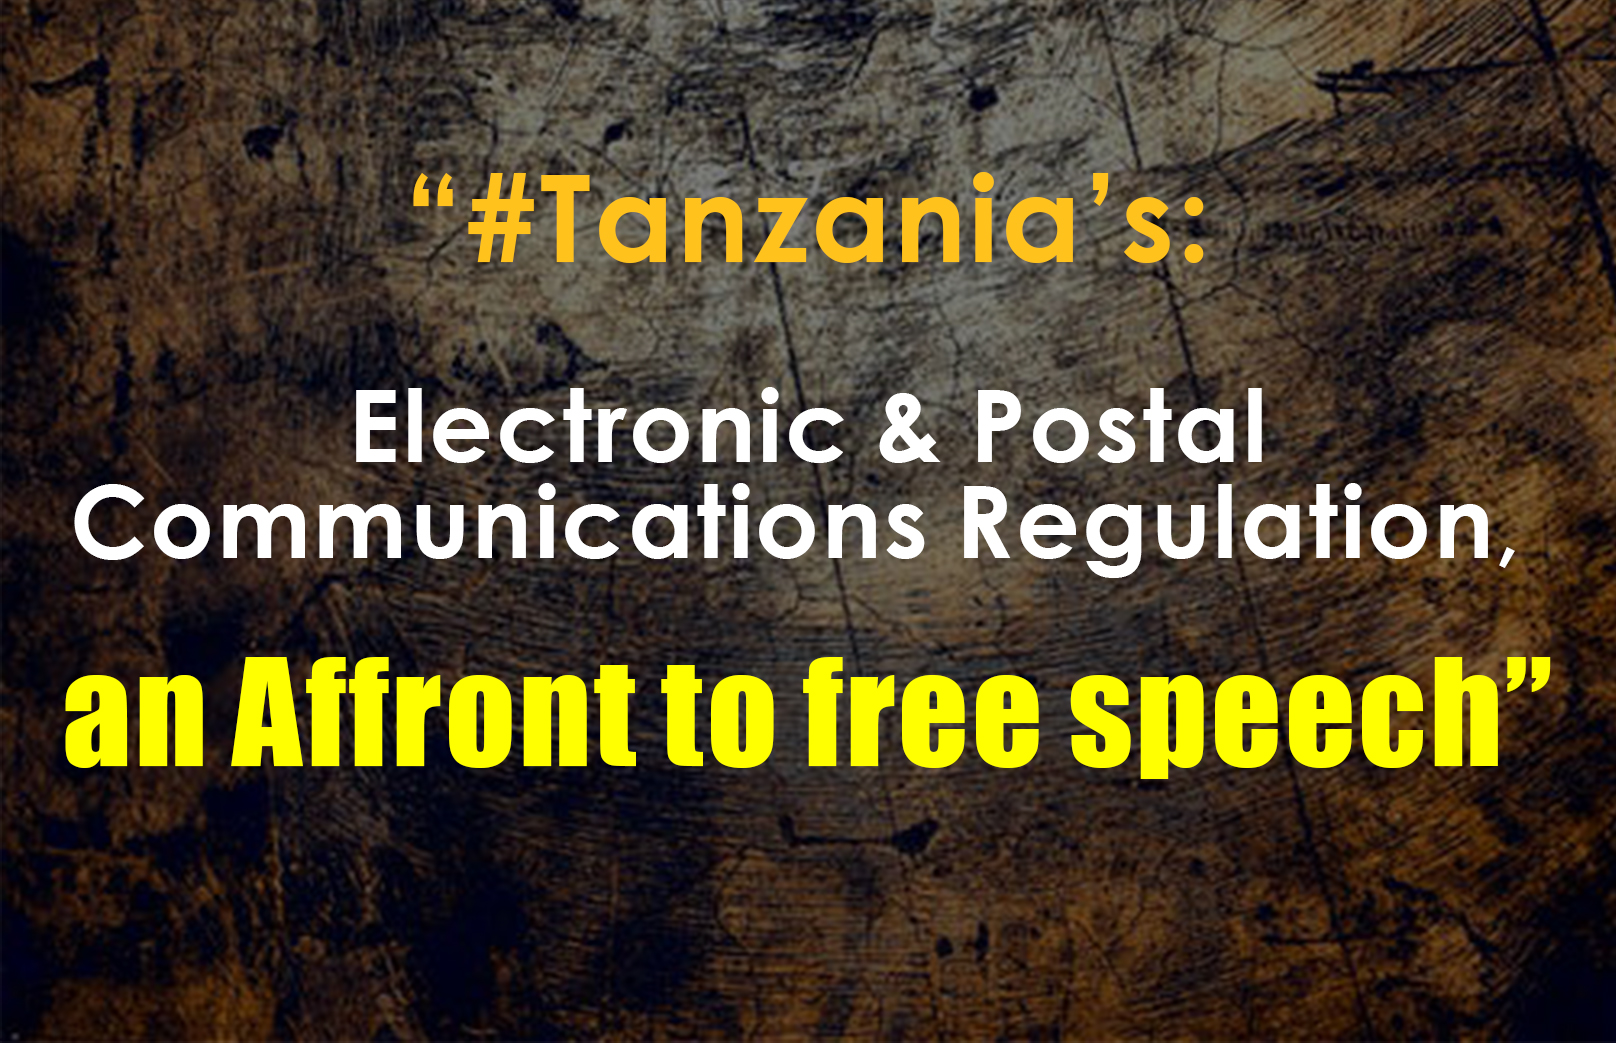 Tanzanie : Les blogueurs et les créateurs de contenu dans le tourment